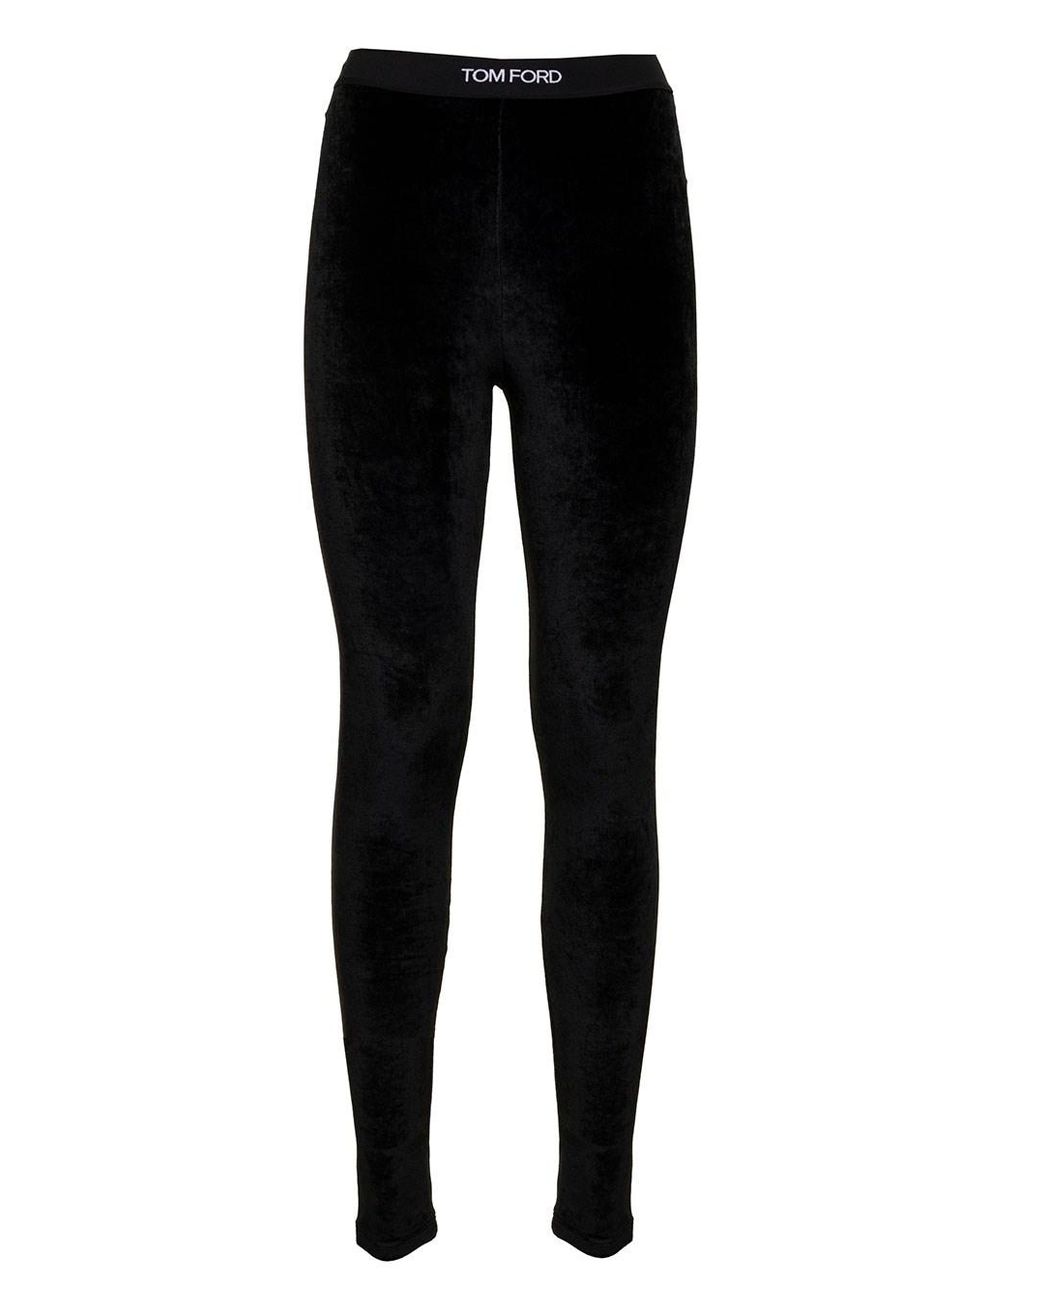 Tom Ford Woman's Velvet Signature leggings in Black | Lyst